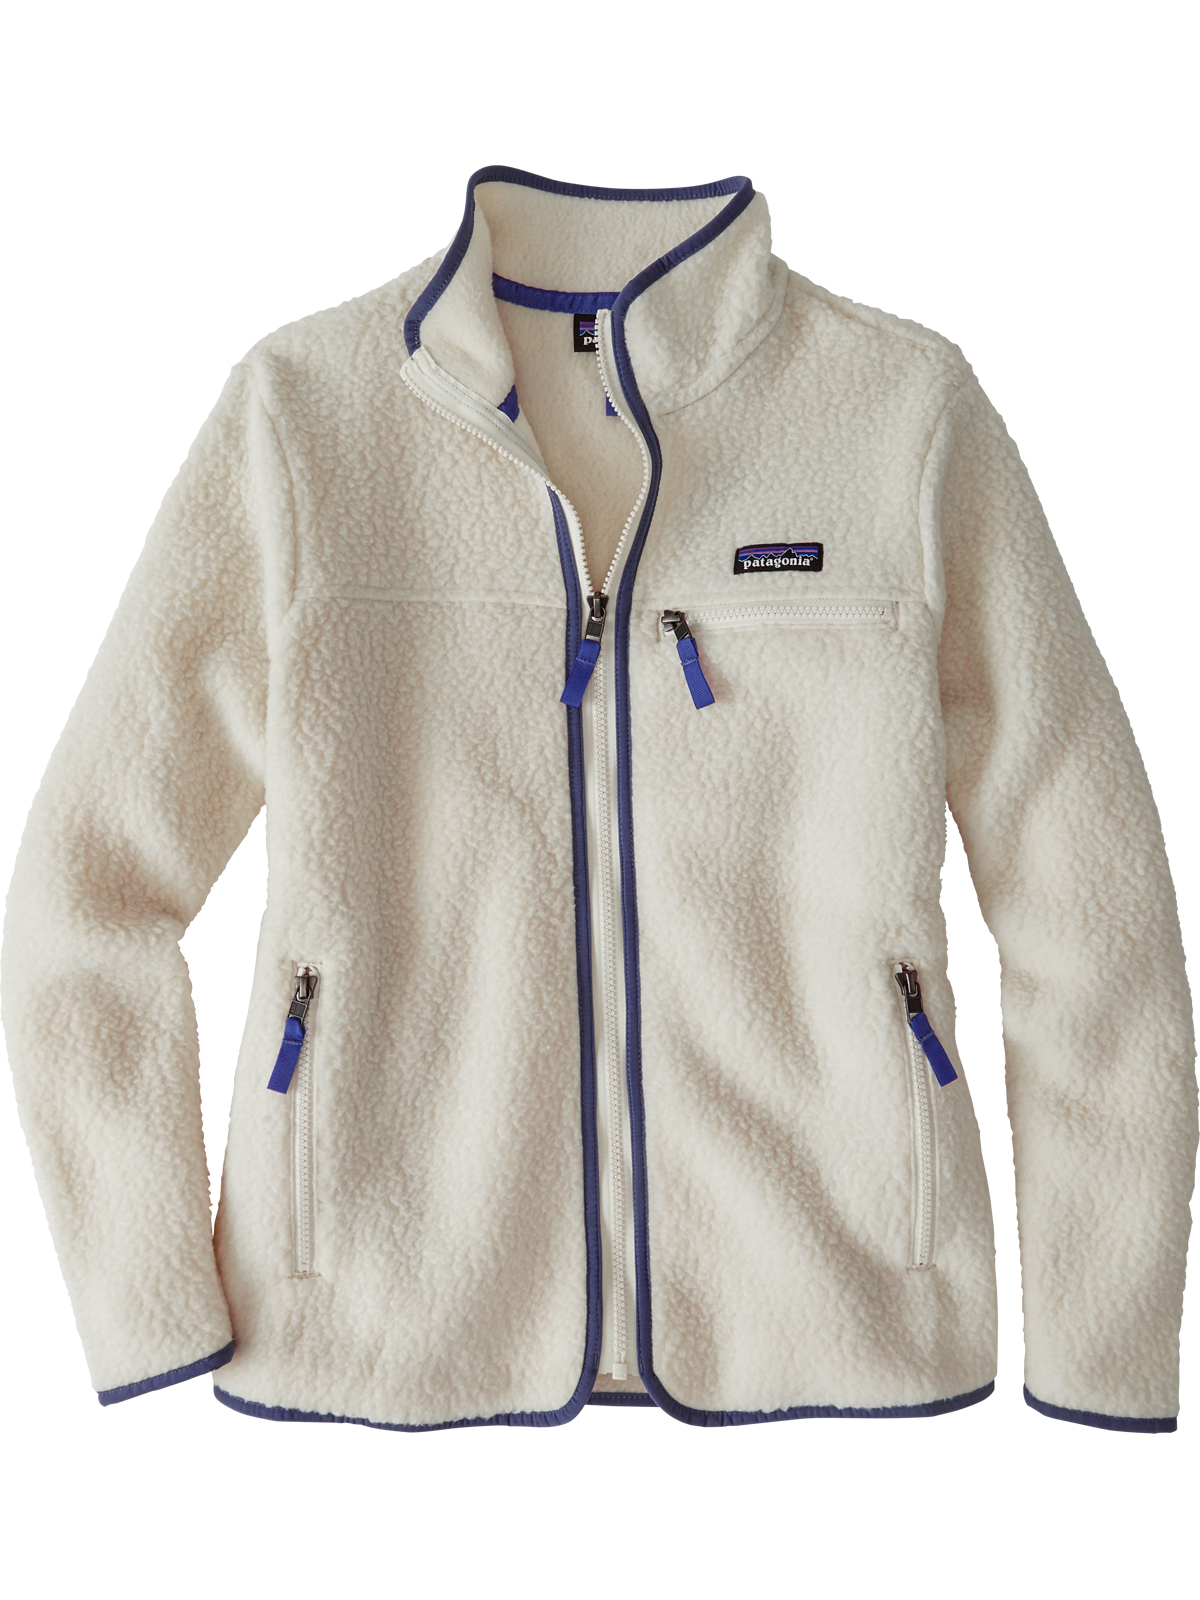 Zip Up Fleece Jackets & Vests for Women | Title Nine